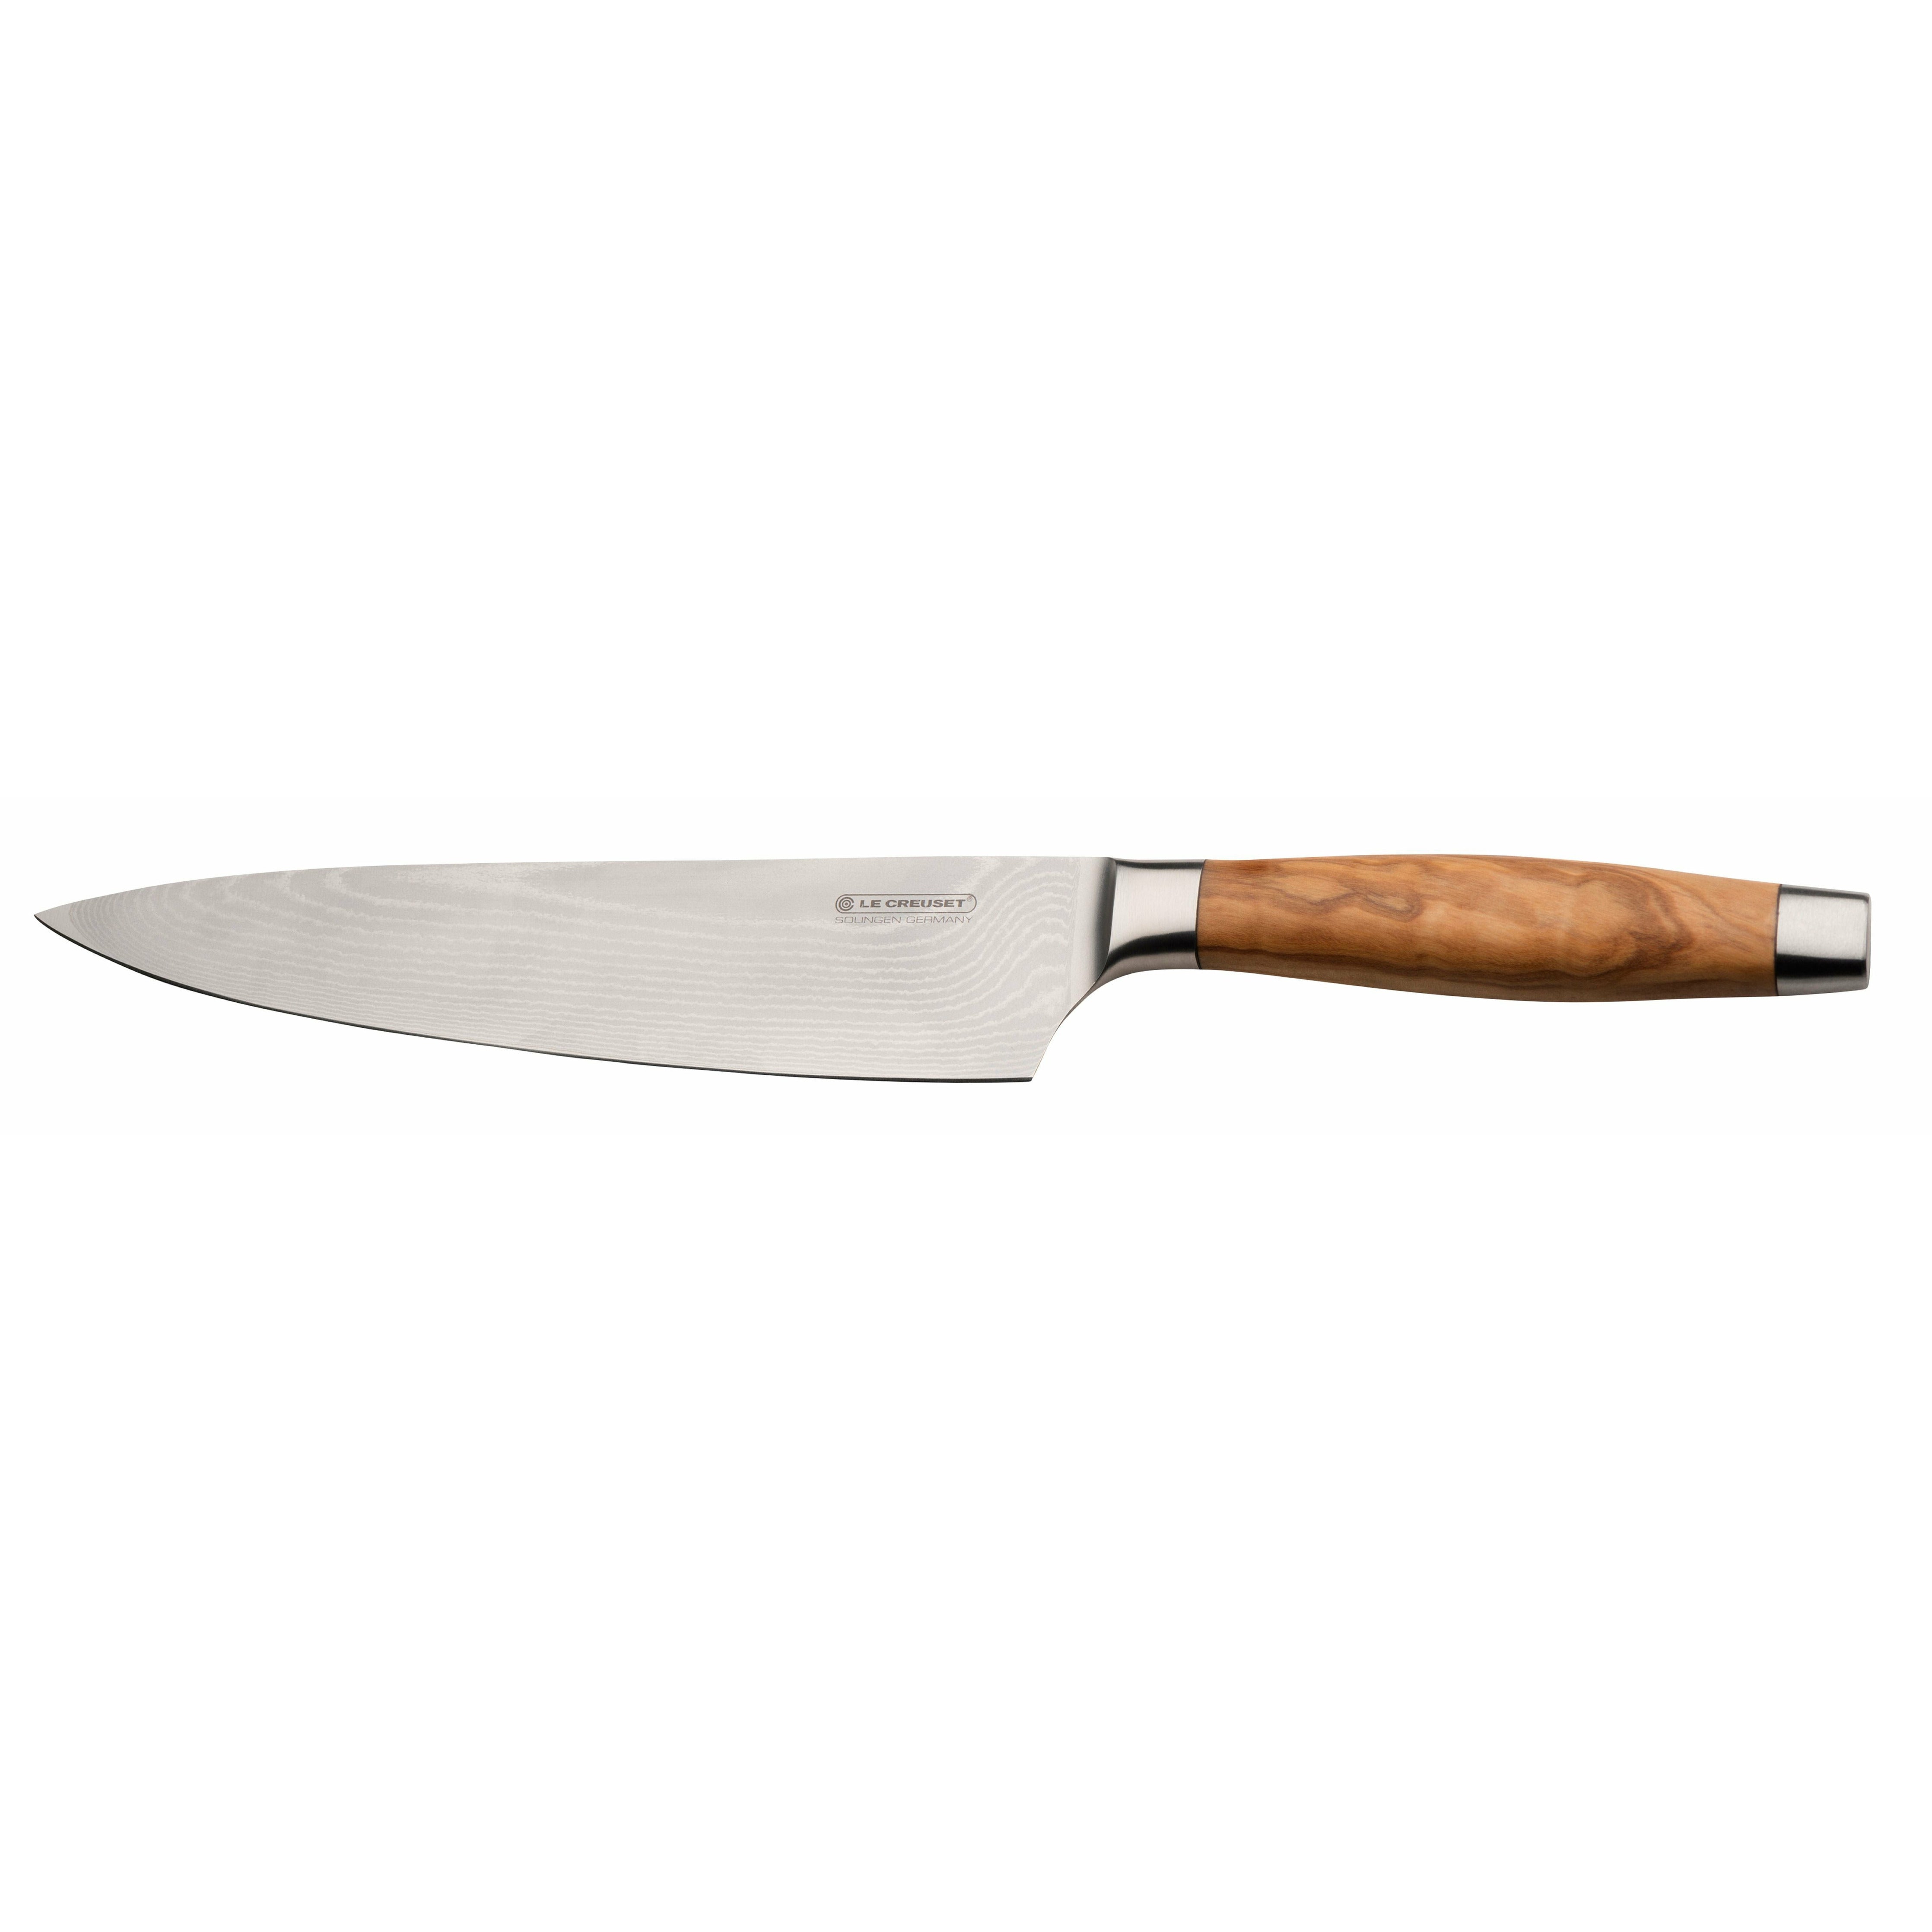 Le Creuset Chef's Knife Olive trehåndtak, 20 cm